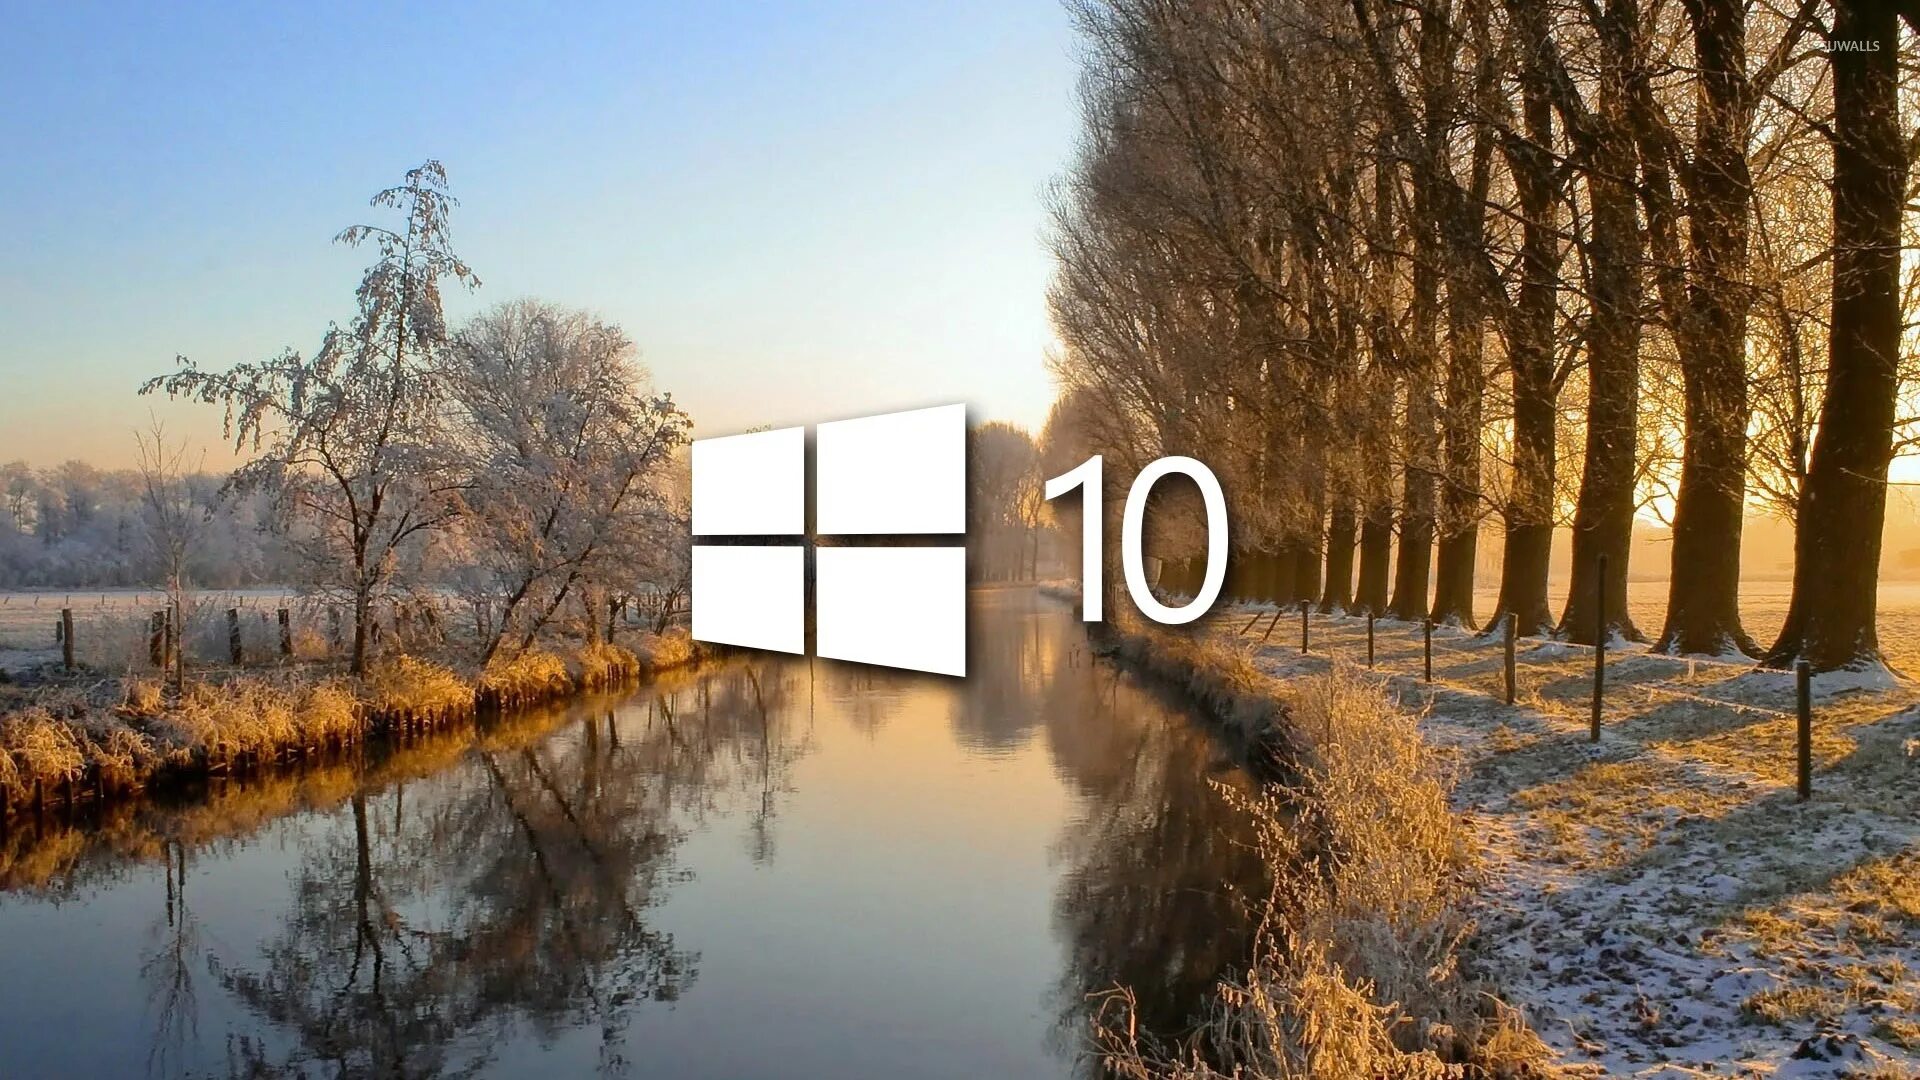 Фото виндовс 10. Обои Windows 10. Обои на рабочий стол Windows 10. Картинка для фона рабочего стола Windows 10.